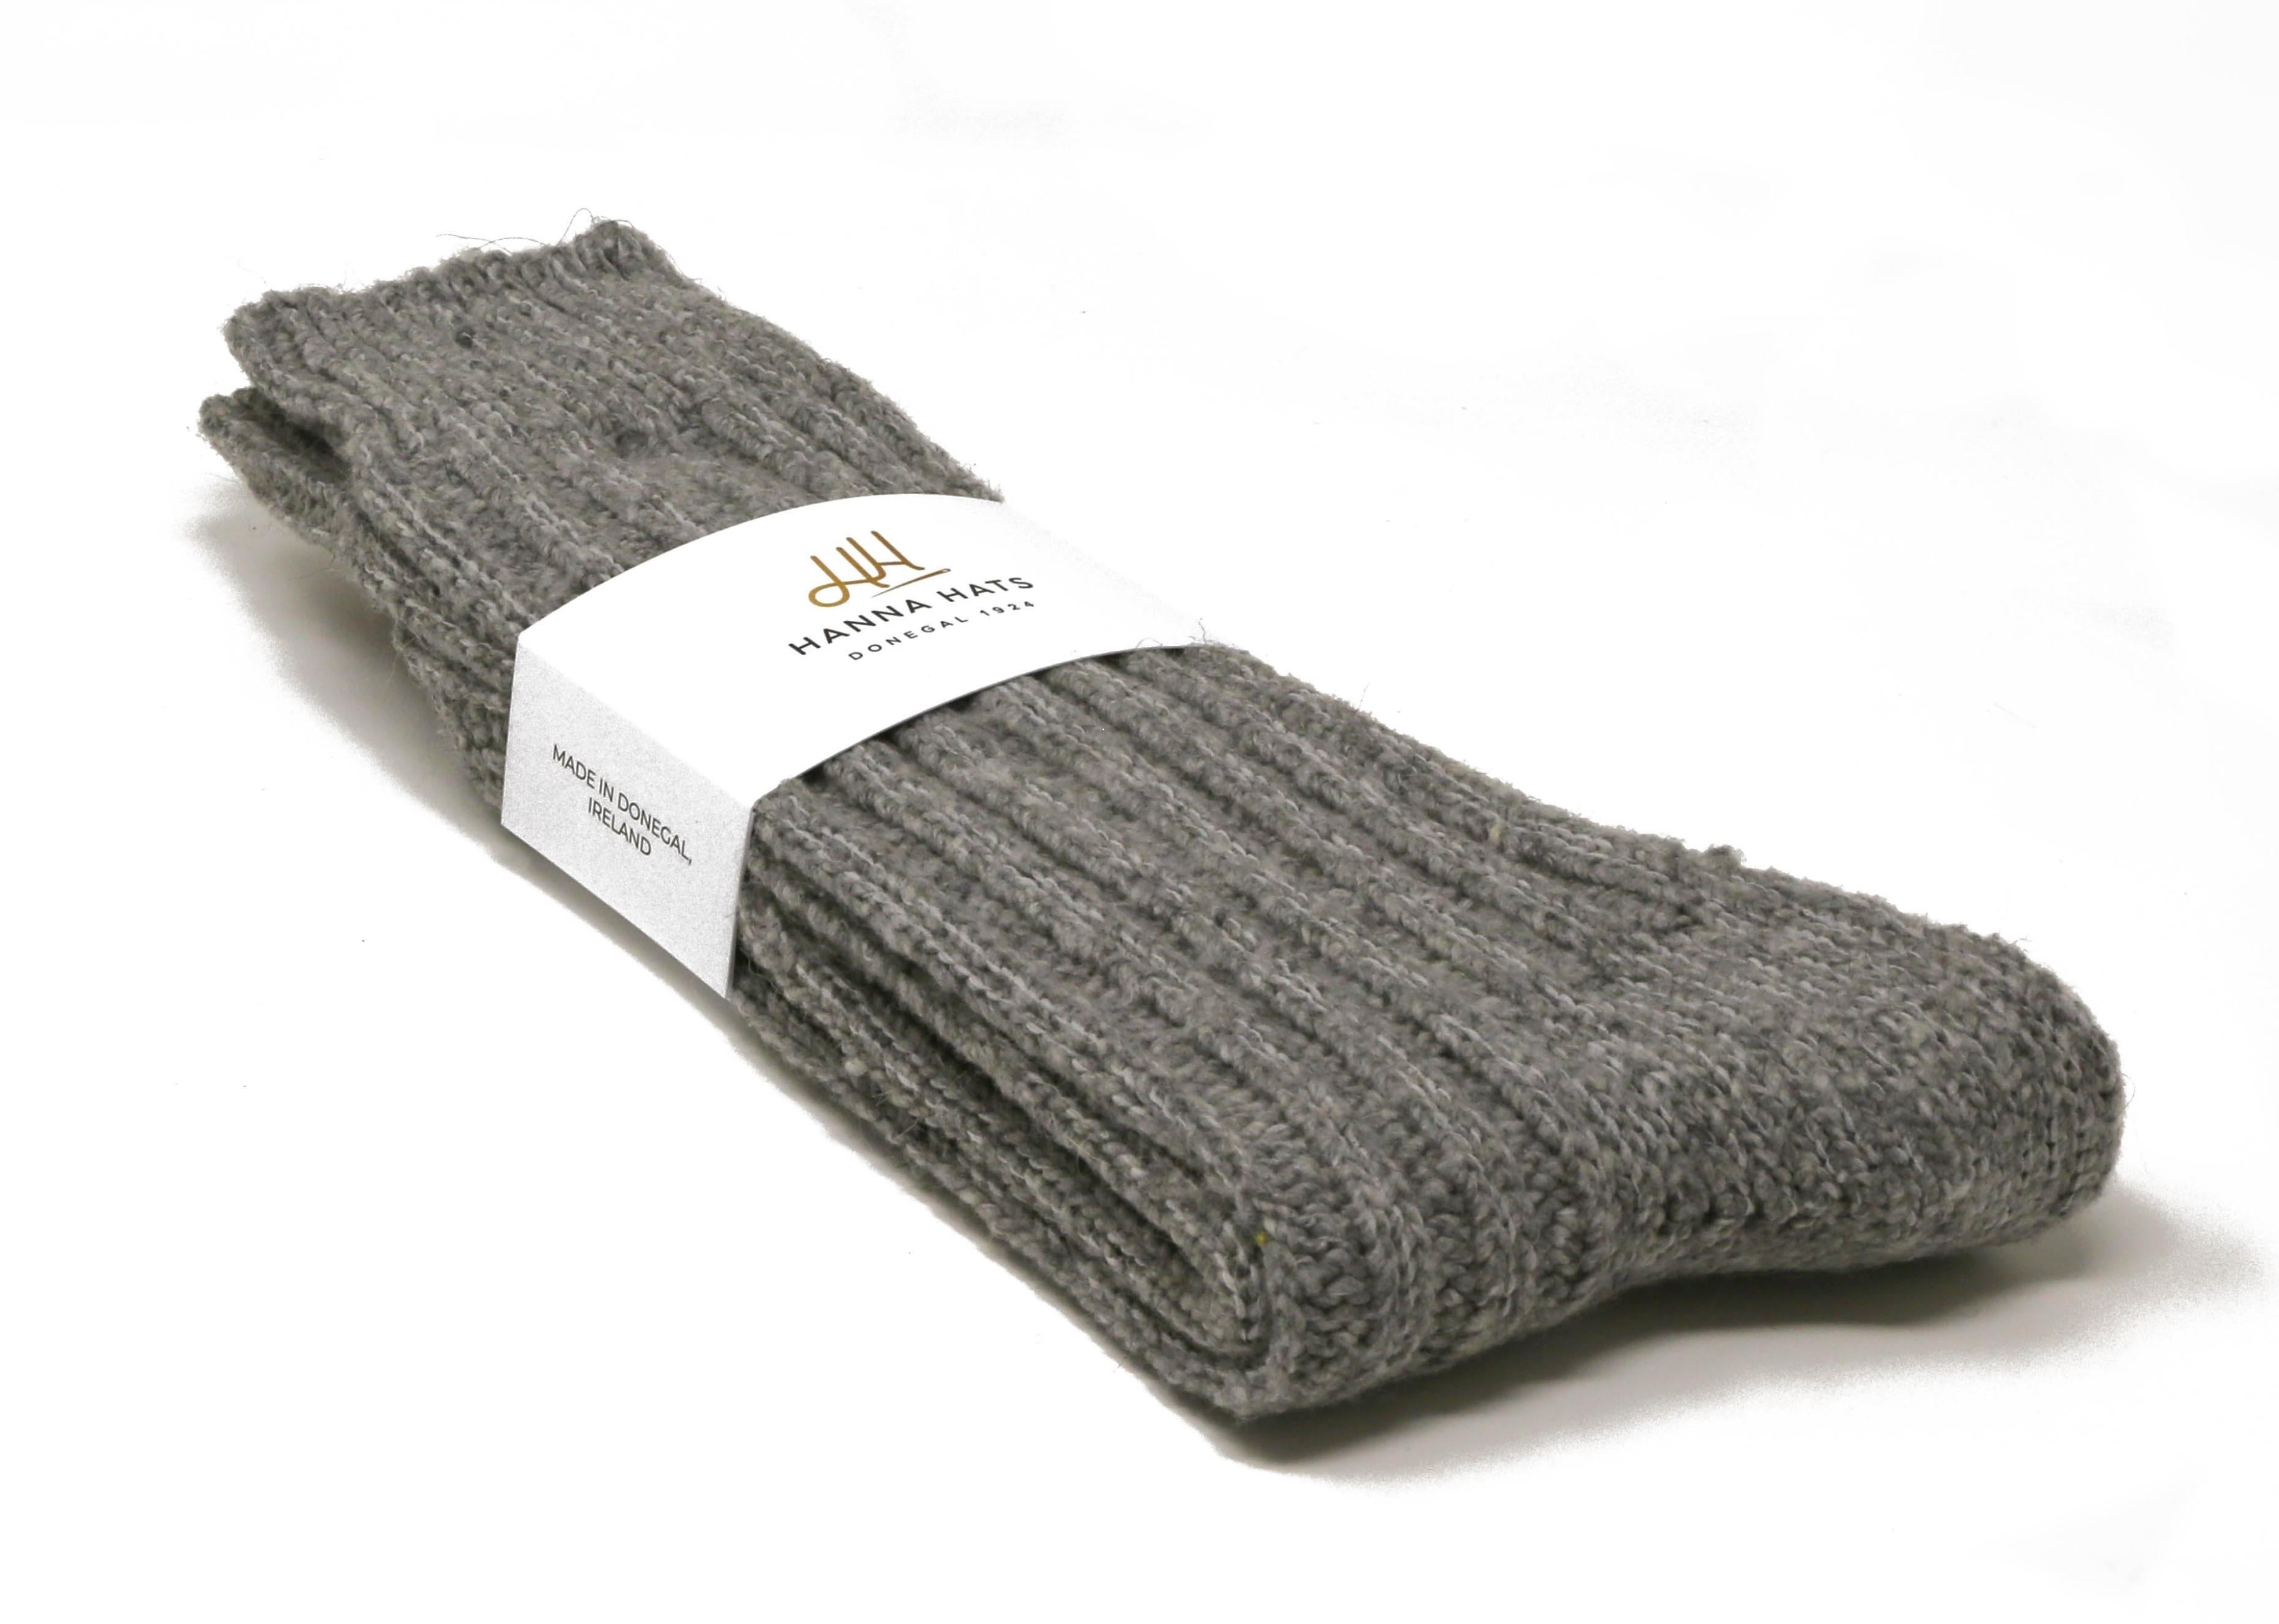 Donegal Socks Limestone Grey Heavy Wool Socks Made in Ireland